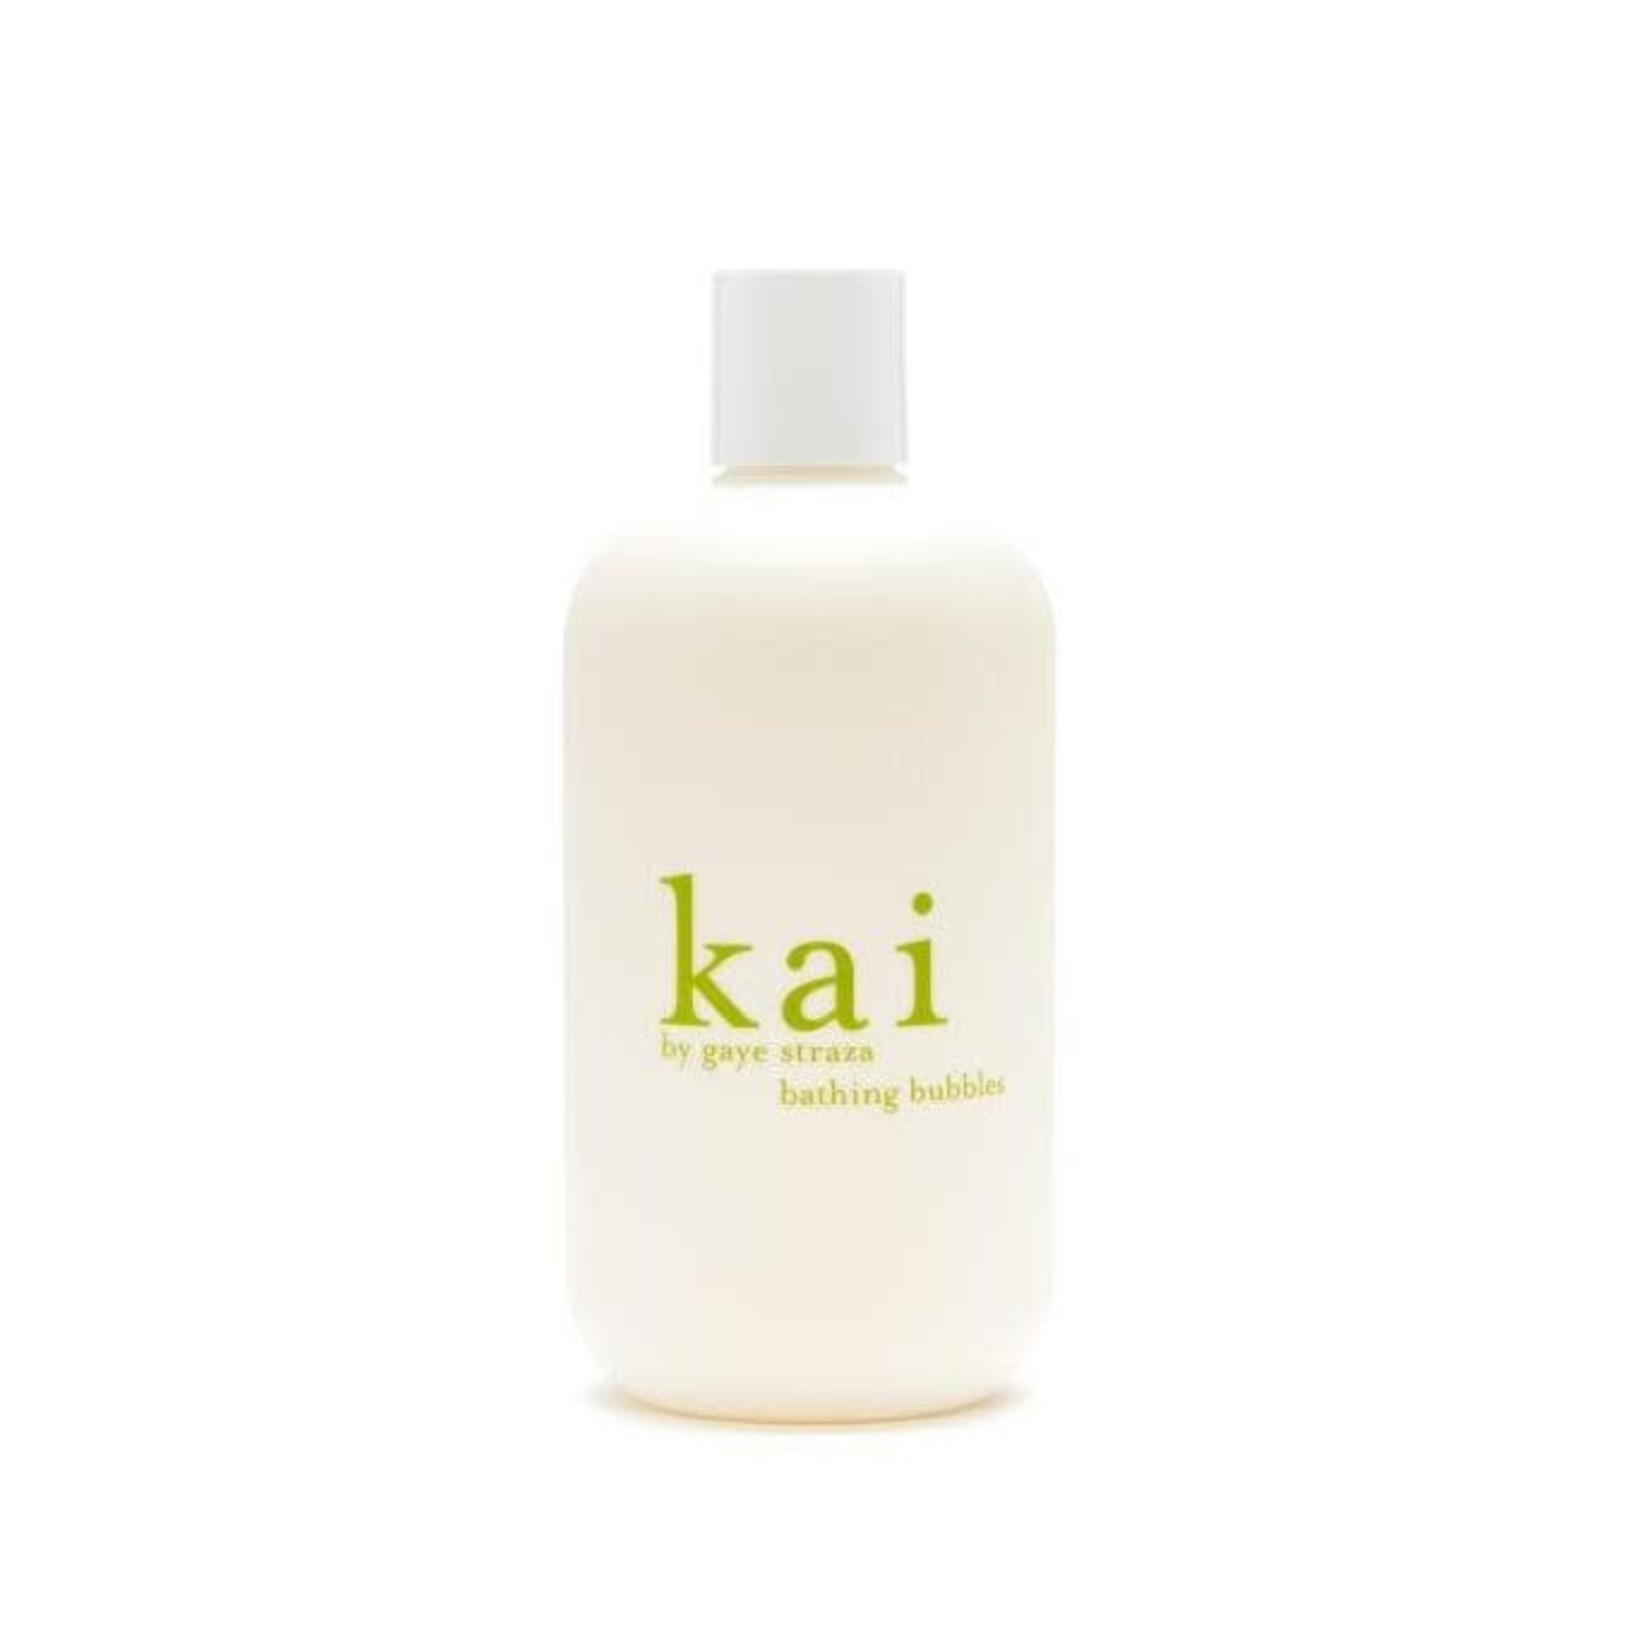 Kai Bathing Bubbles | Kai